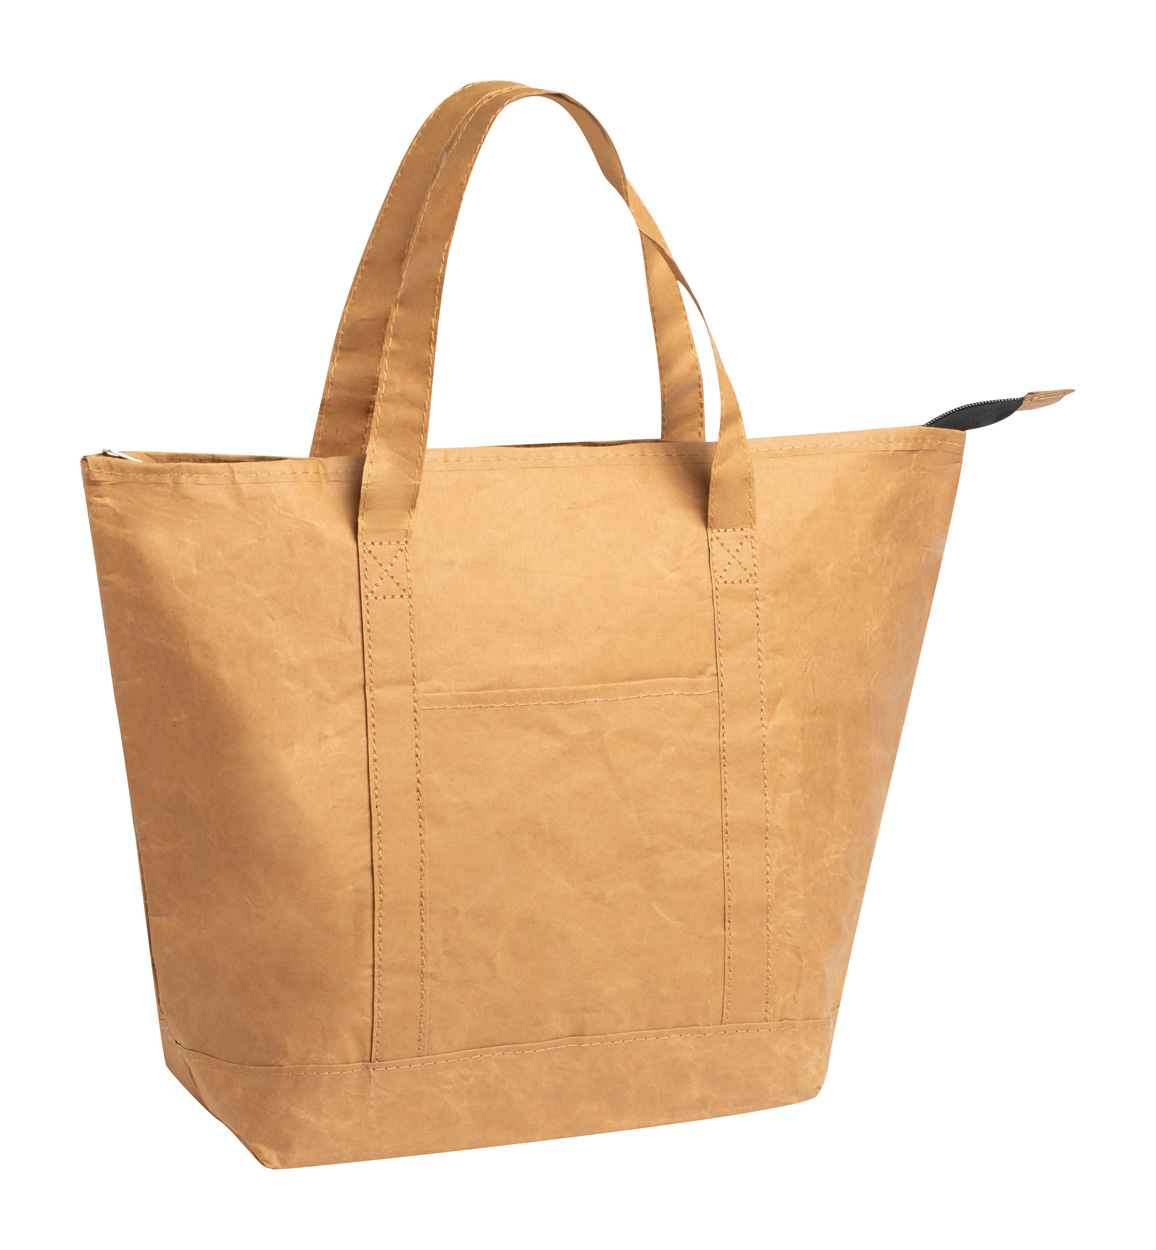 Papírová chladicí taška SABAN s krátkými držadly - přírodní / bílá